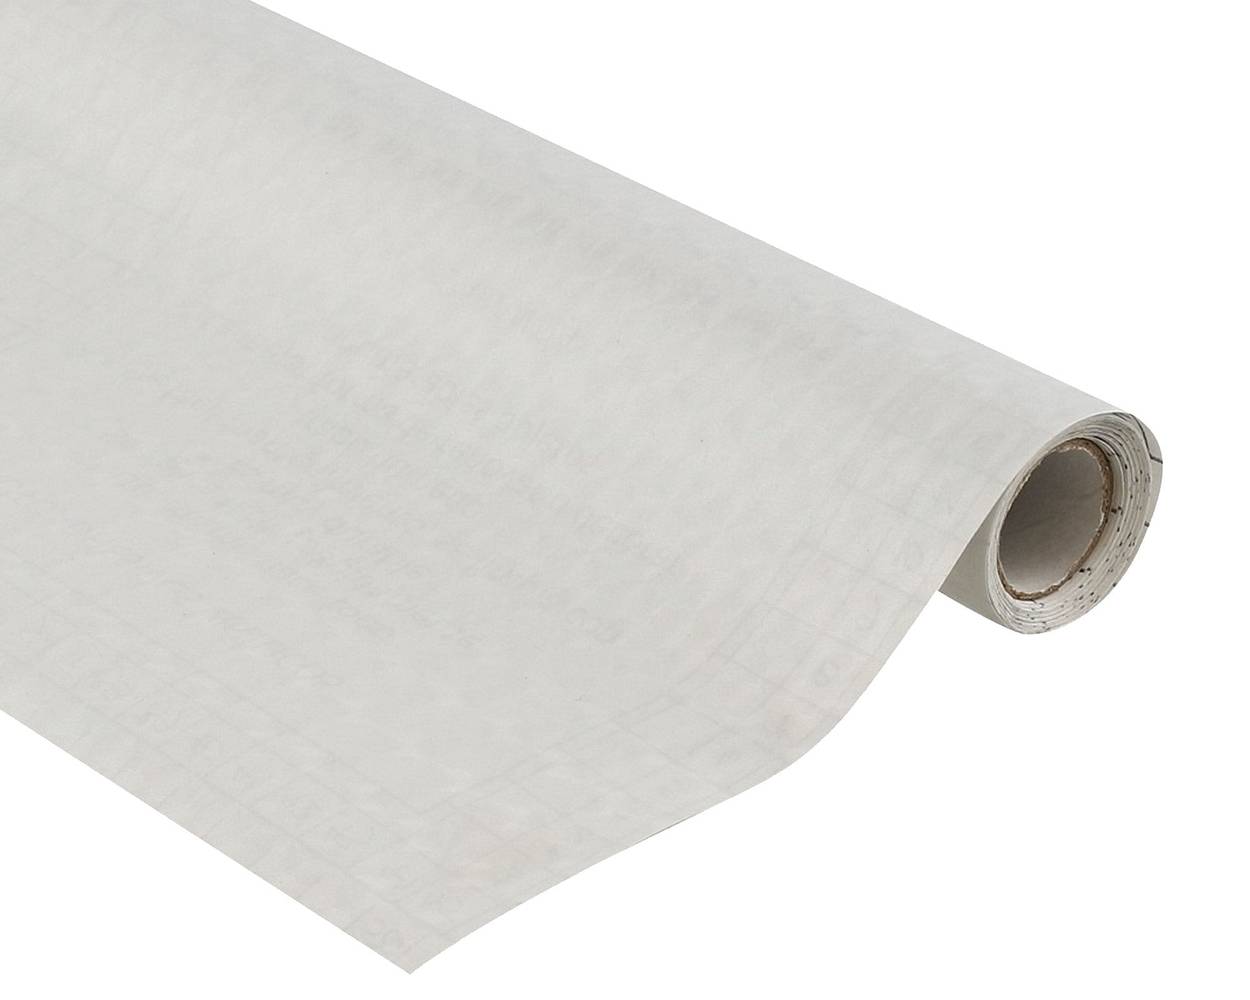 Muresco papel autoadhesivo 2 x 0,45 metros círculo (1 papel autoadhesivo)